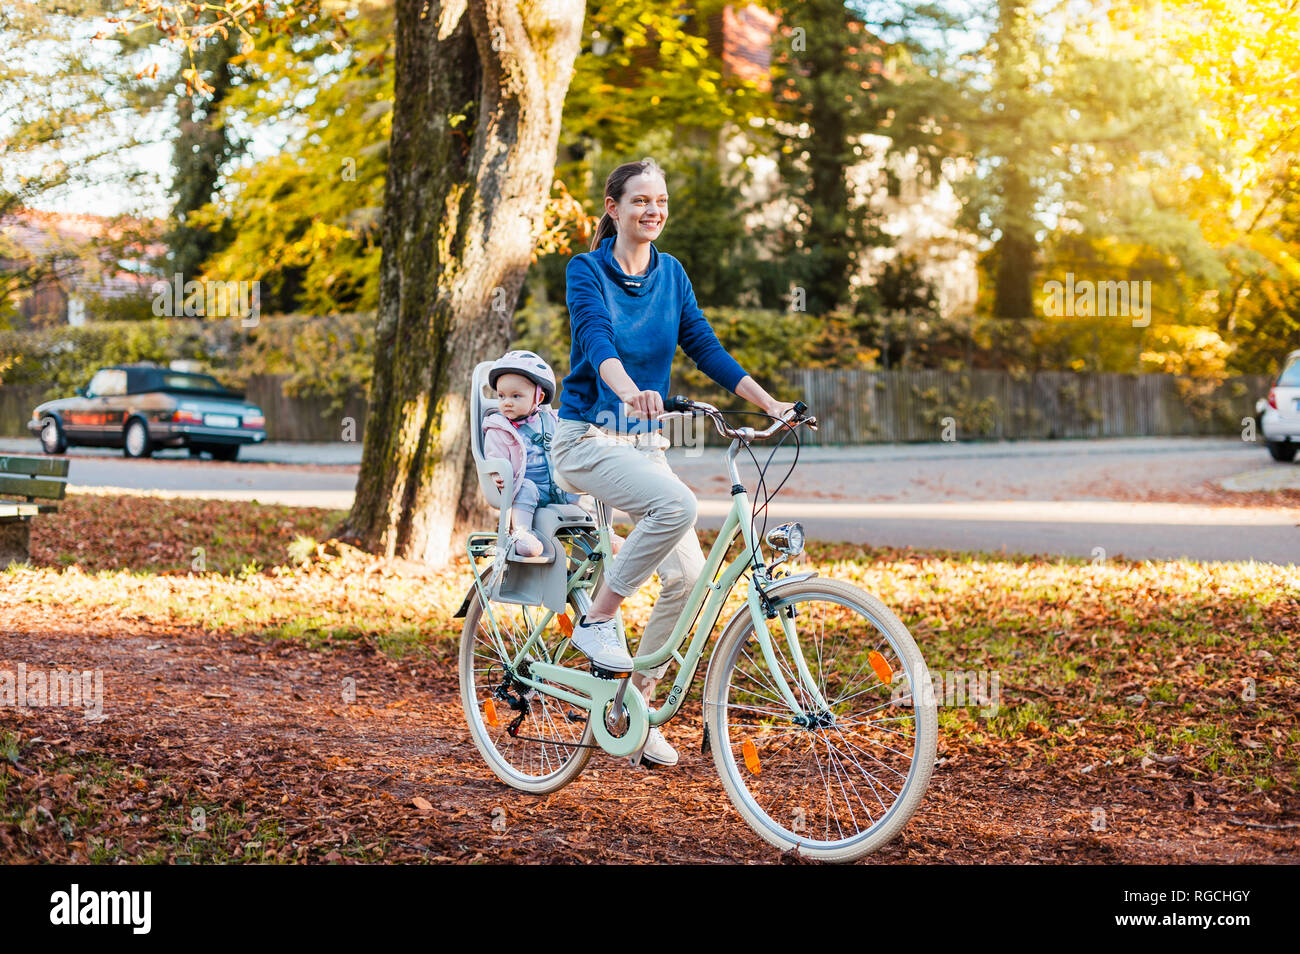 Mutter und Tochter Reiten Fahrrad, Baby tragen Helm im Kindersitz sitzen Stockfoto